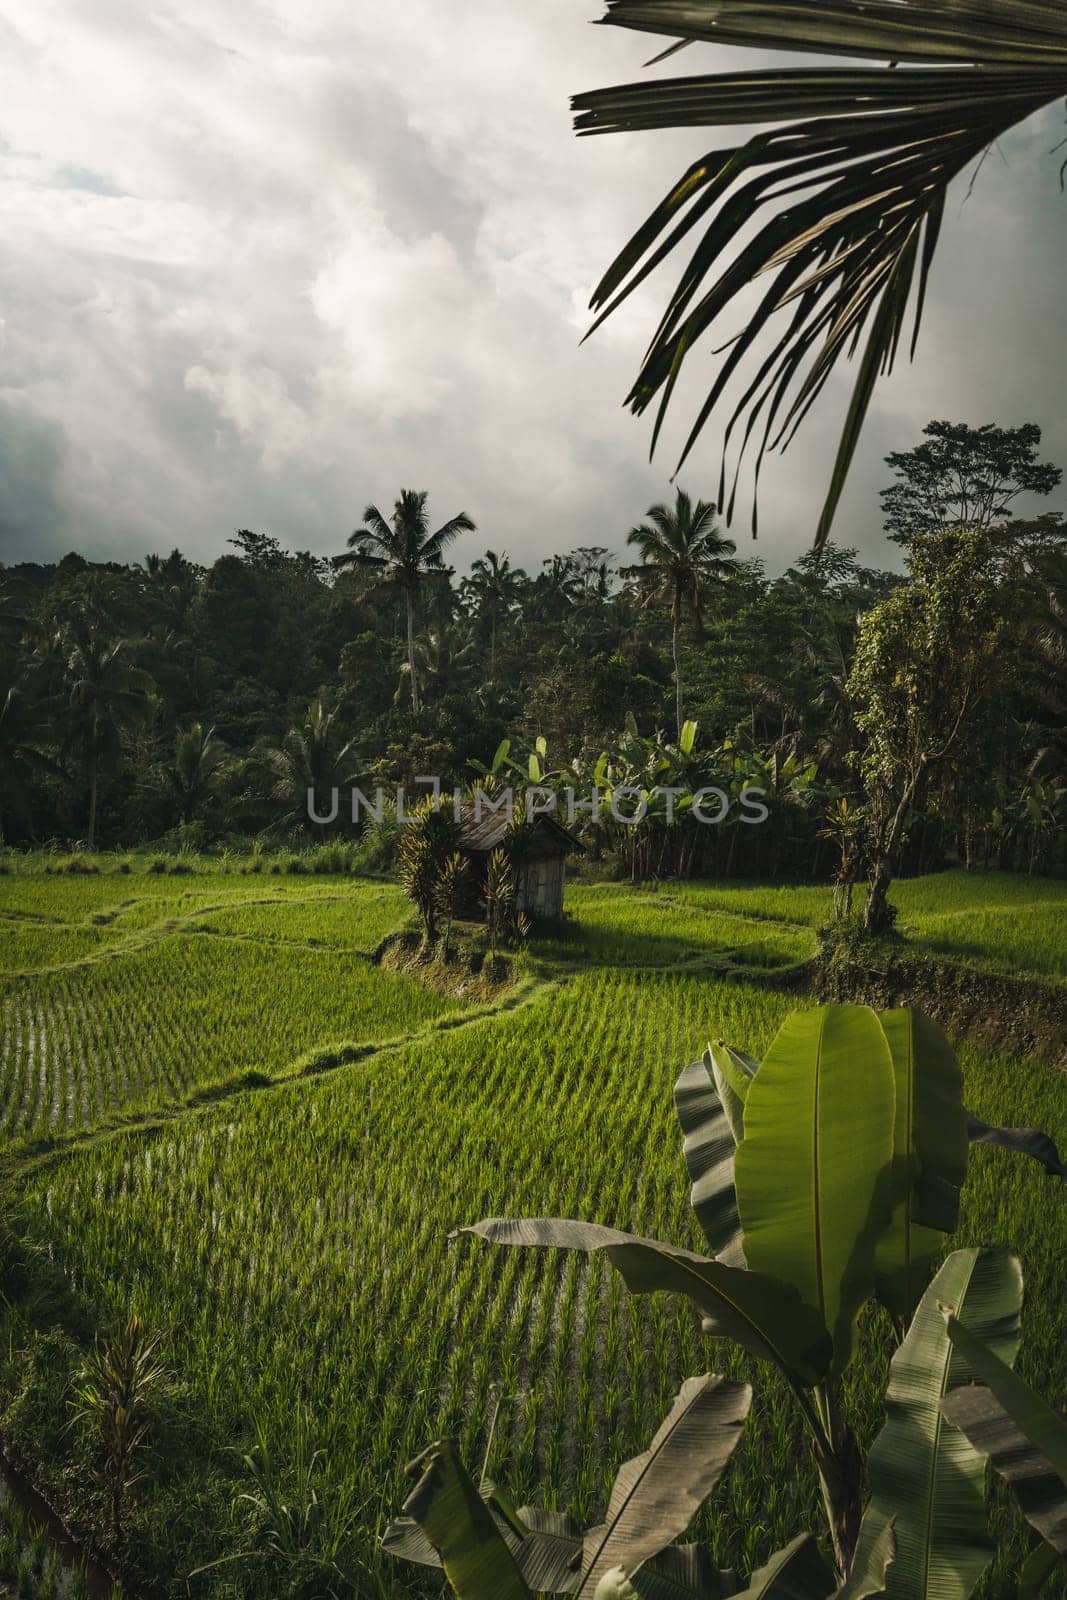 Landscape view of rice plantation near the palms jungle by Popov